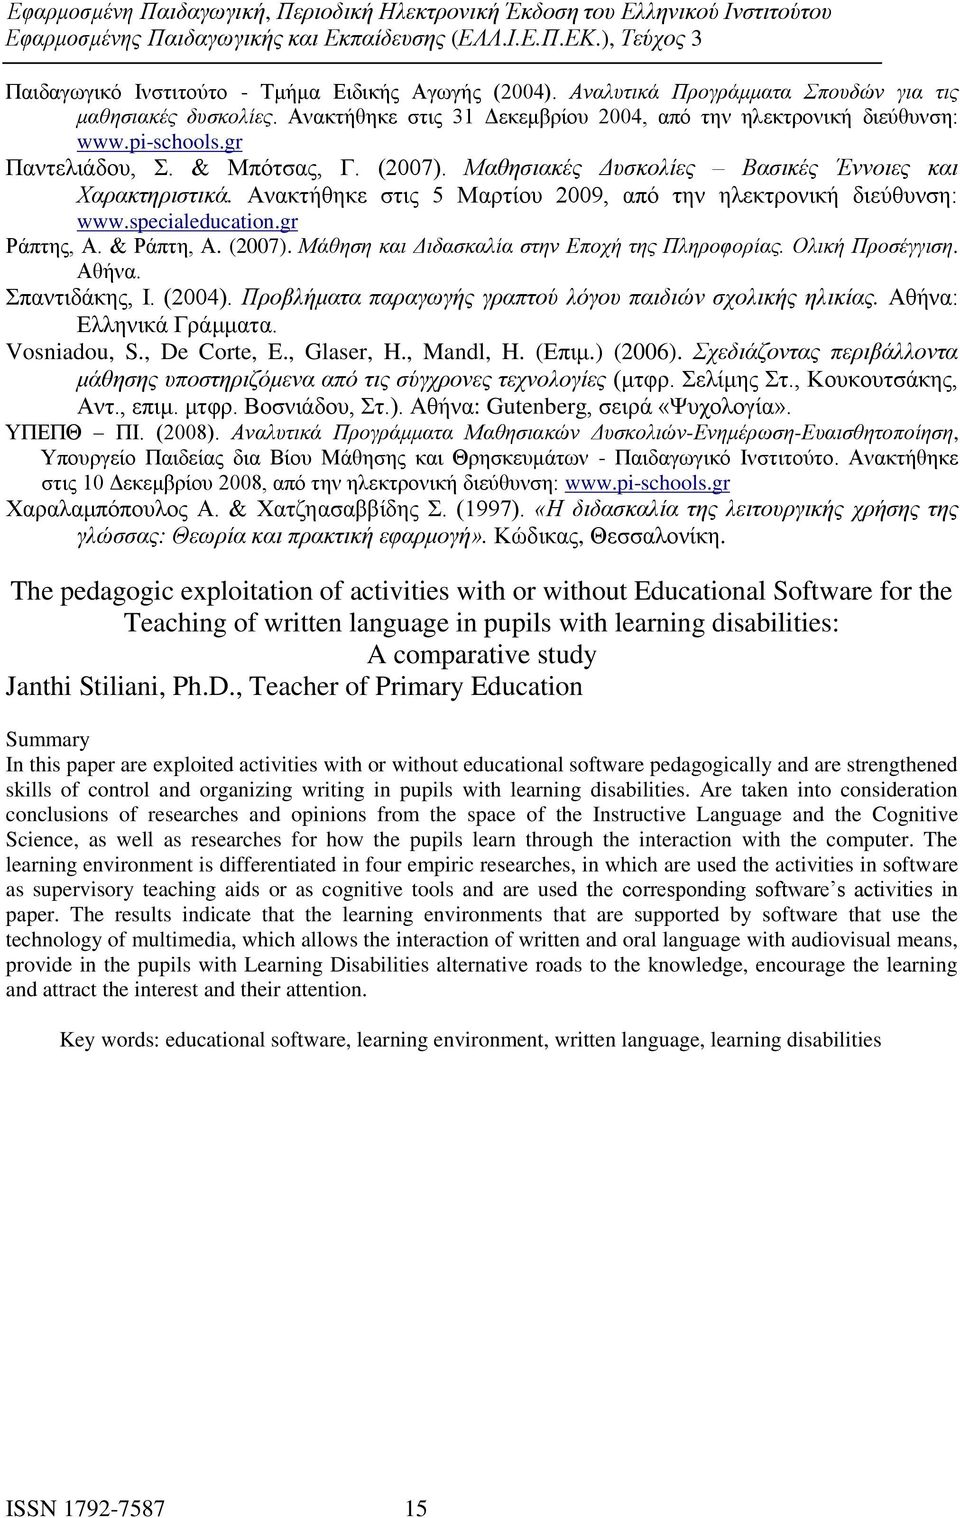 & Ράπτη, Α. (2007). Μάθηση και Διδασκαλία στην Εποχή της Πληροφορίας. Ολική Προσέγγιση. Αθήνα. Σπαντιδάκης, Ι. (2004). Προβλήματα παραγωγής γραπτού λόγου παιδιών σχολικής ηλικίας.